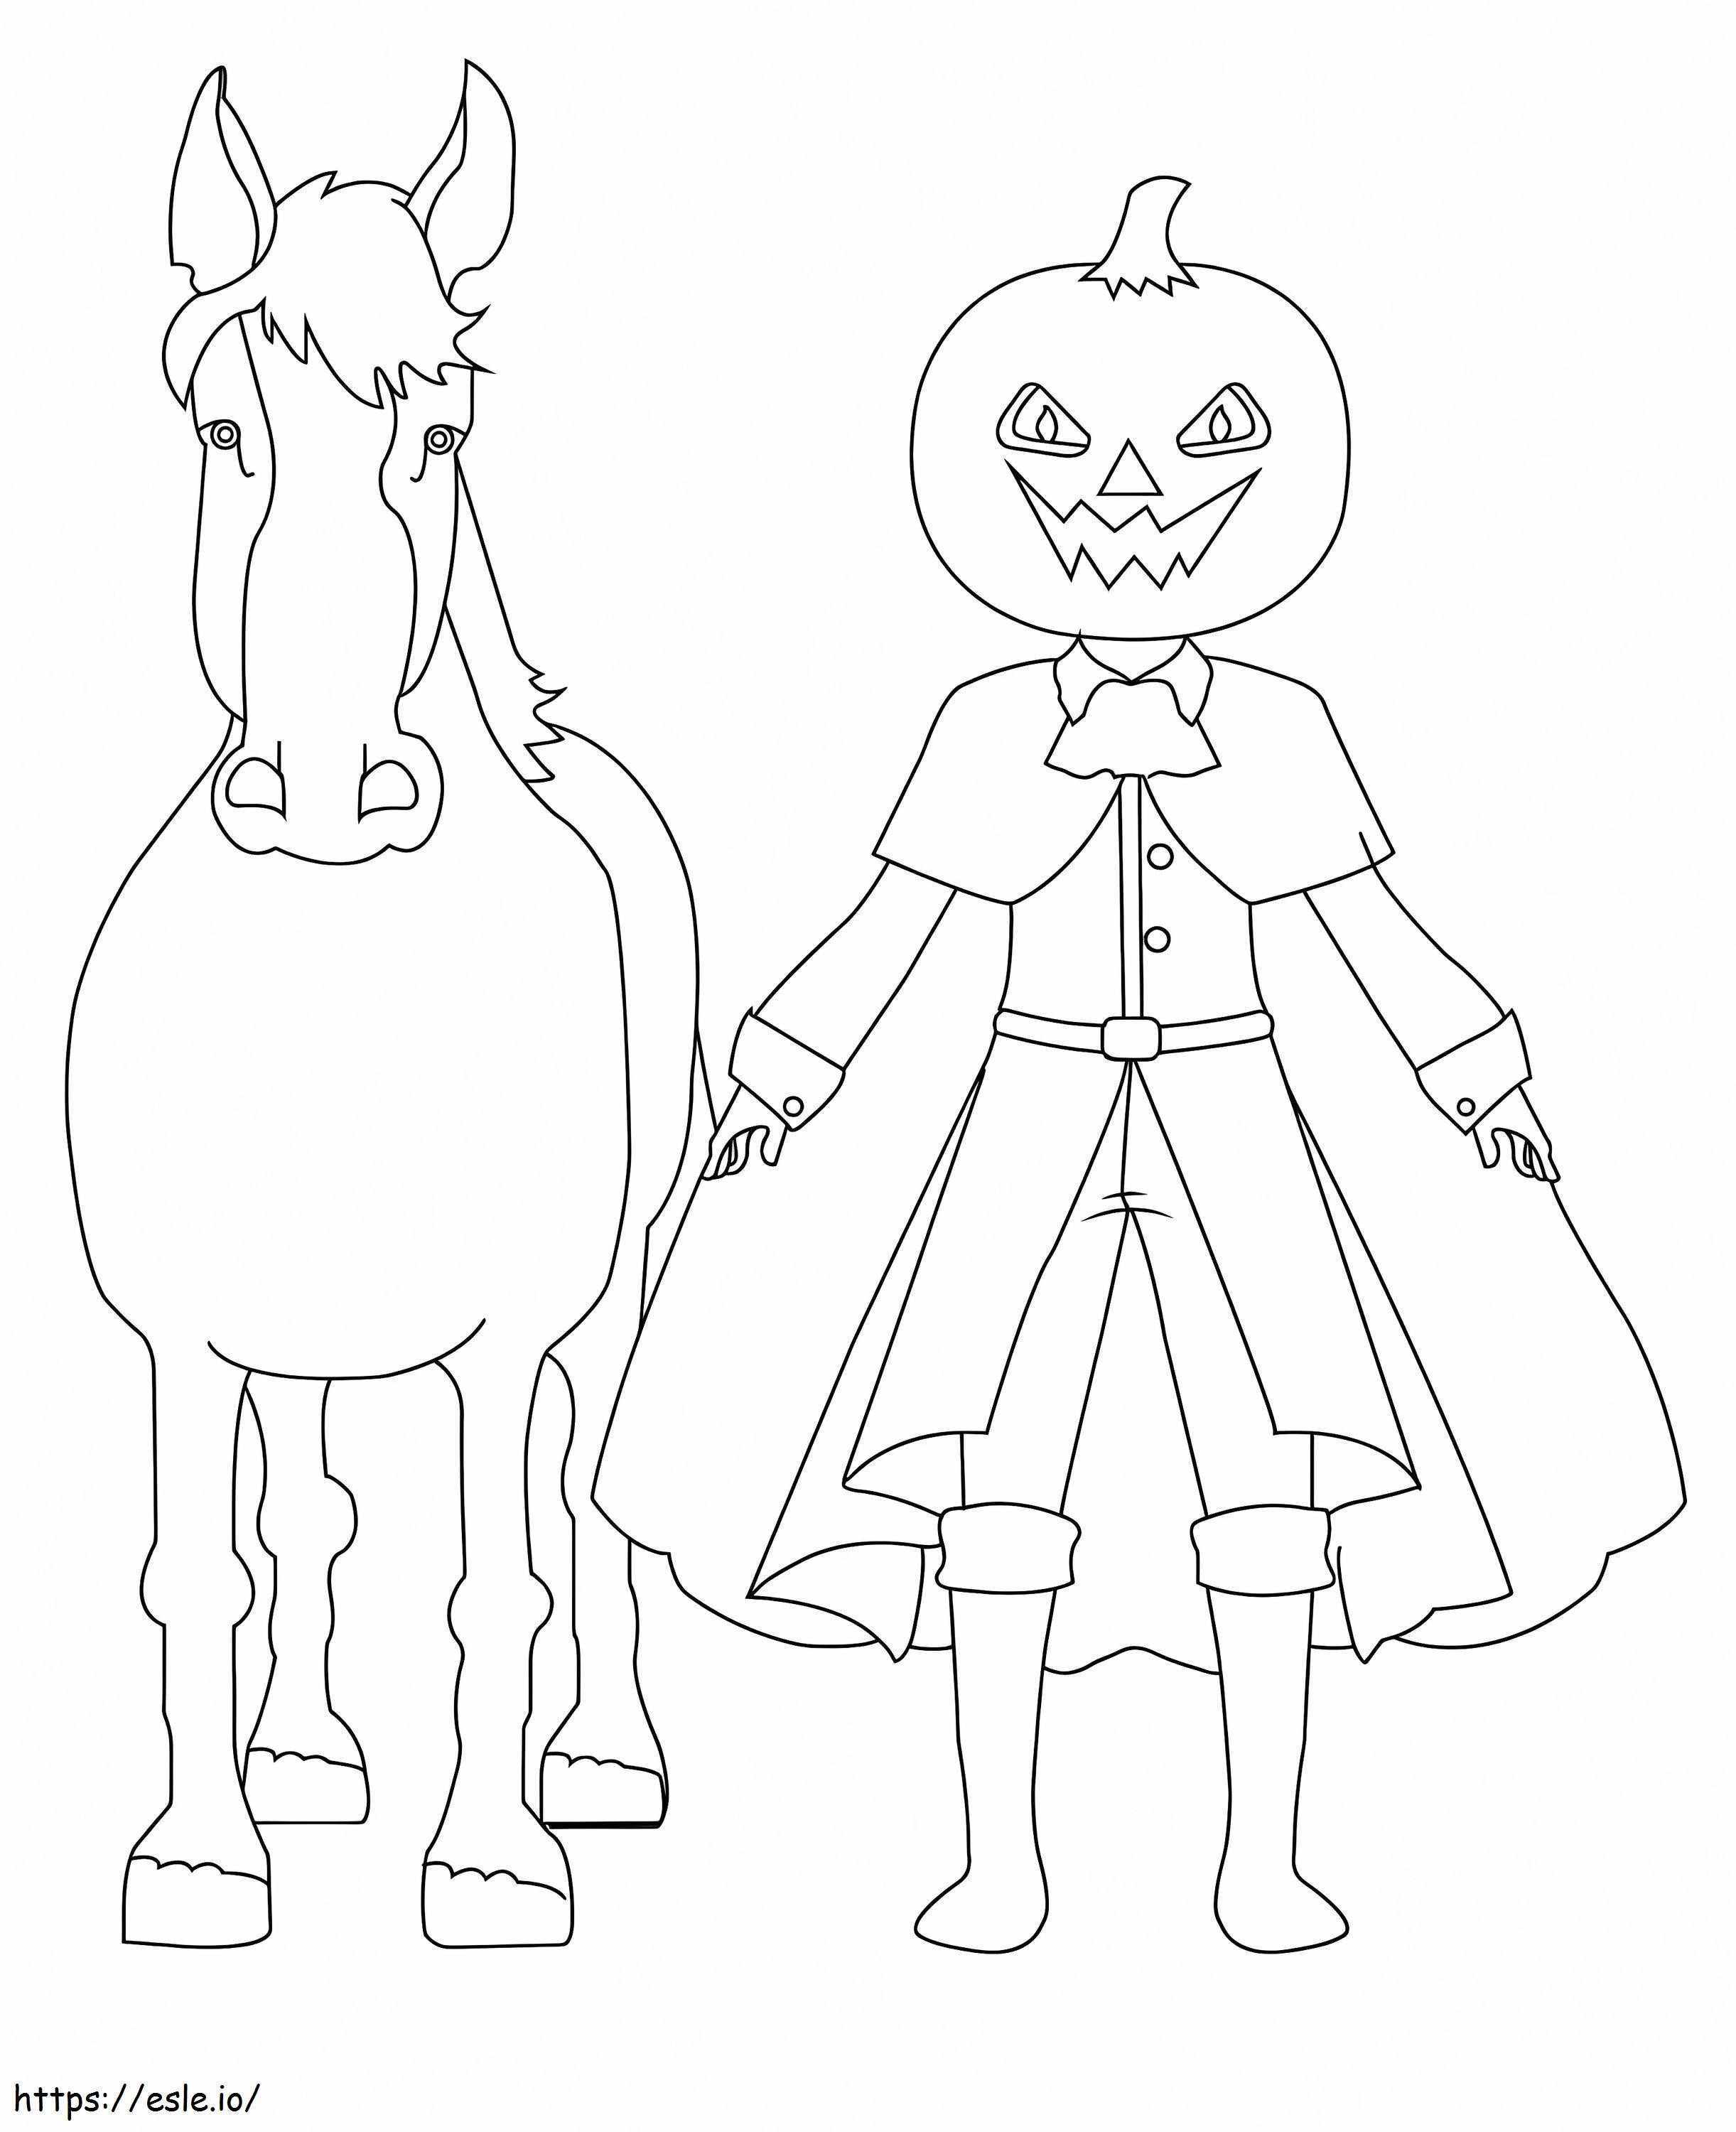 Halloweenowy Bezgłowy Jeździec 3 kolorowanka